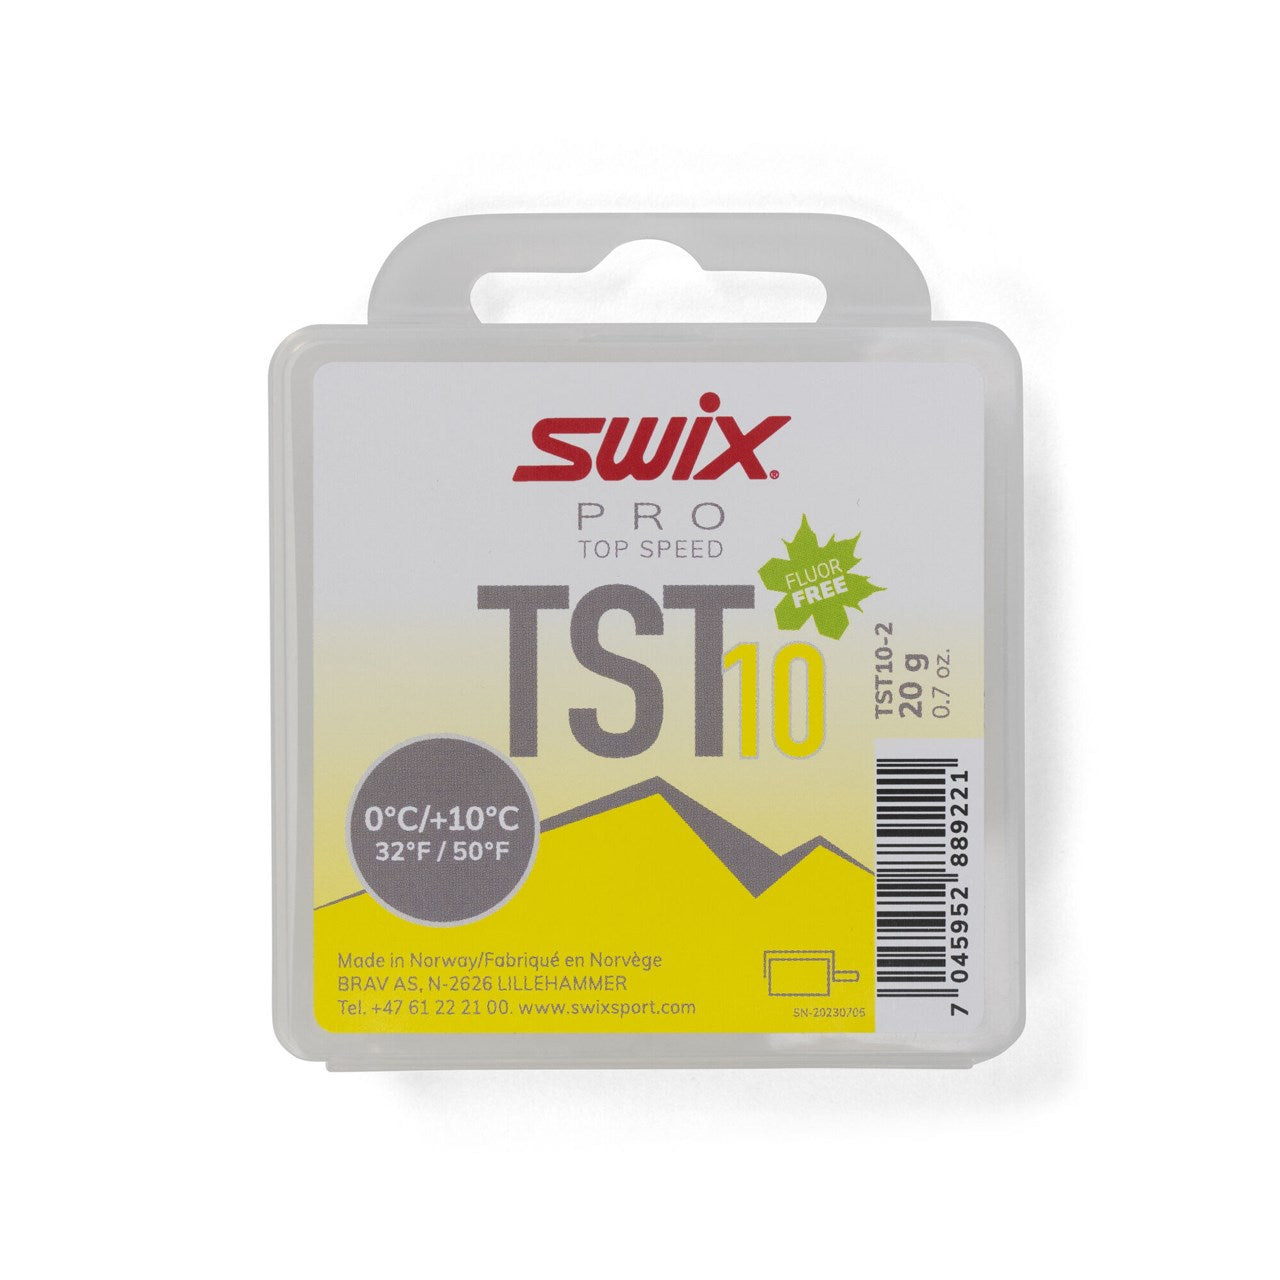 Swix TS10 Turbo Wax Yellow 20g TUNING EQUIPMENT Swix   